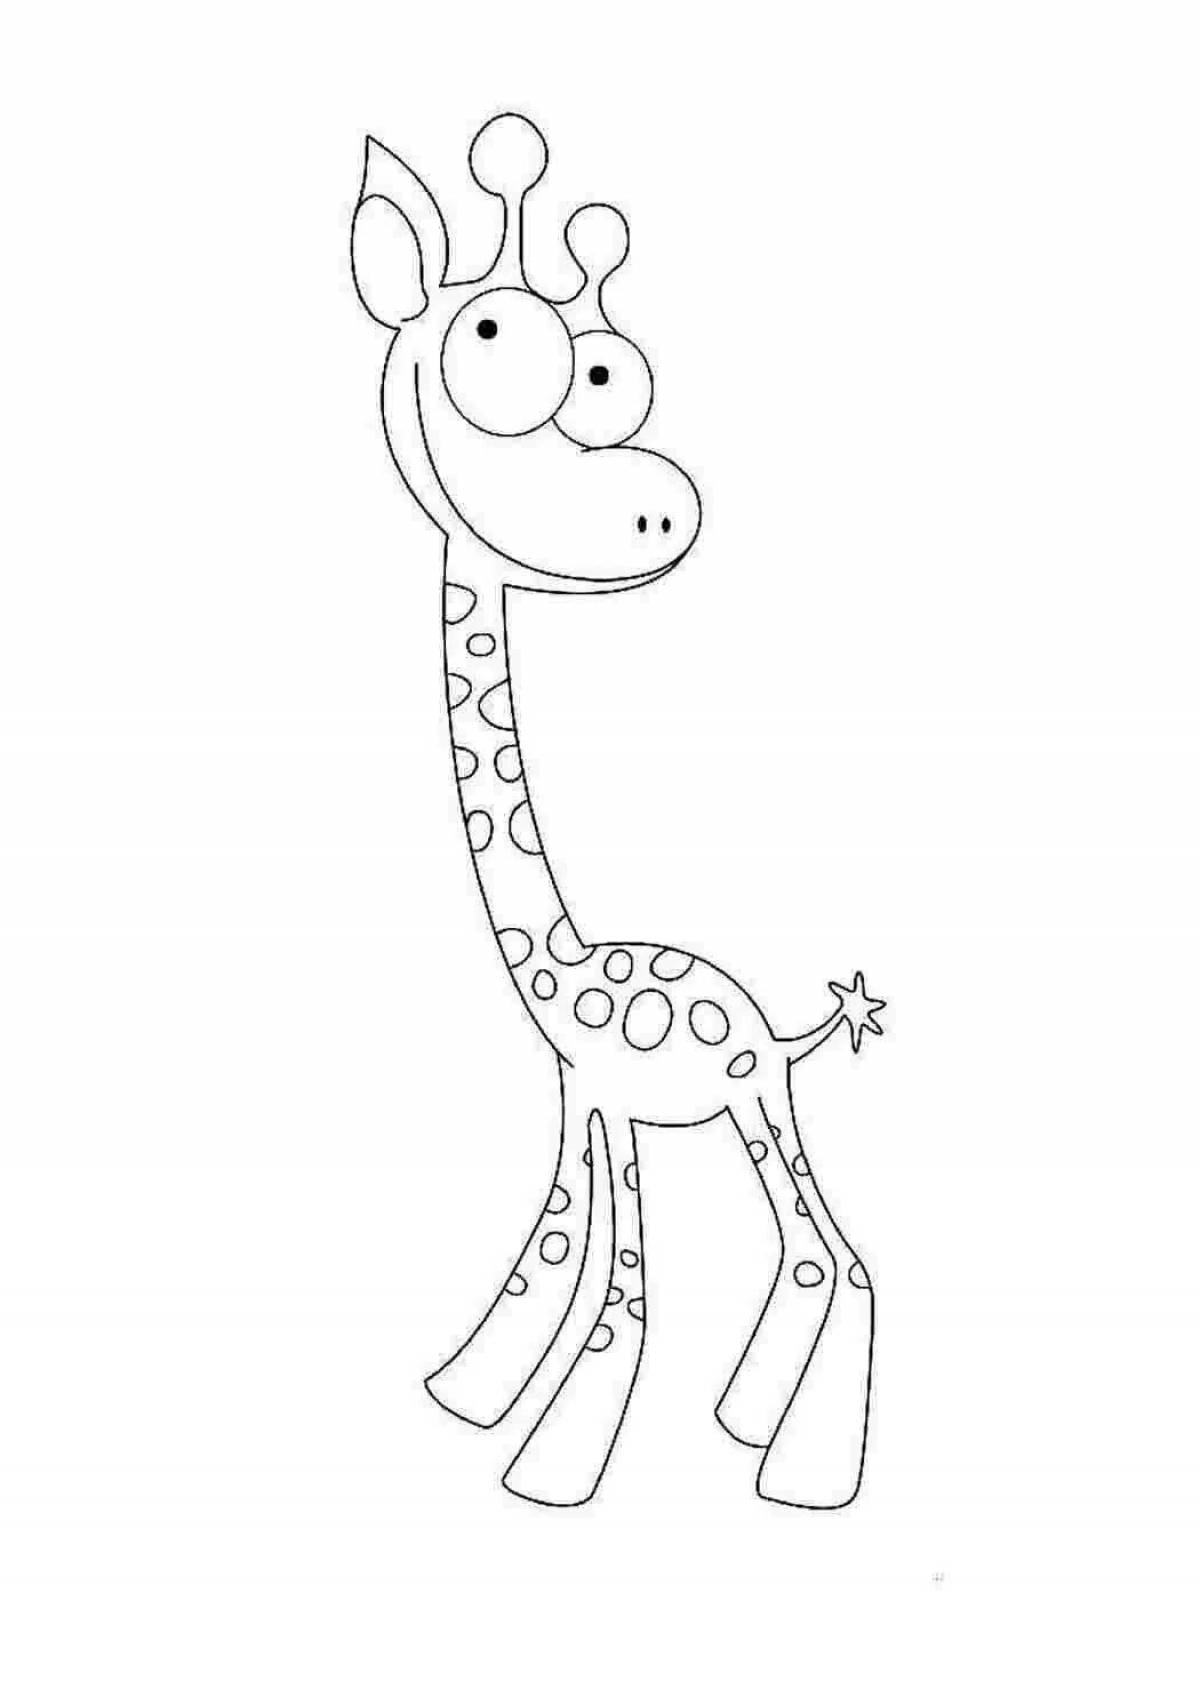 Fun giraffe drawing for kids